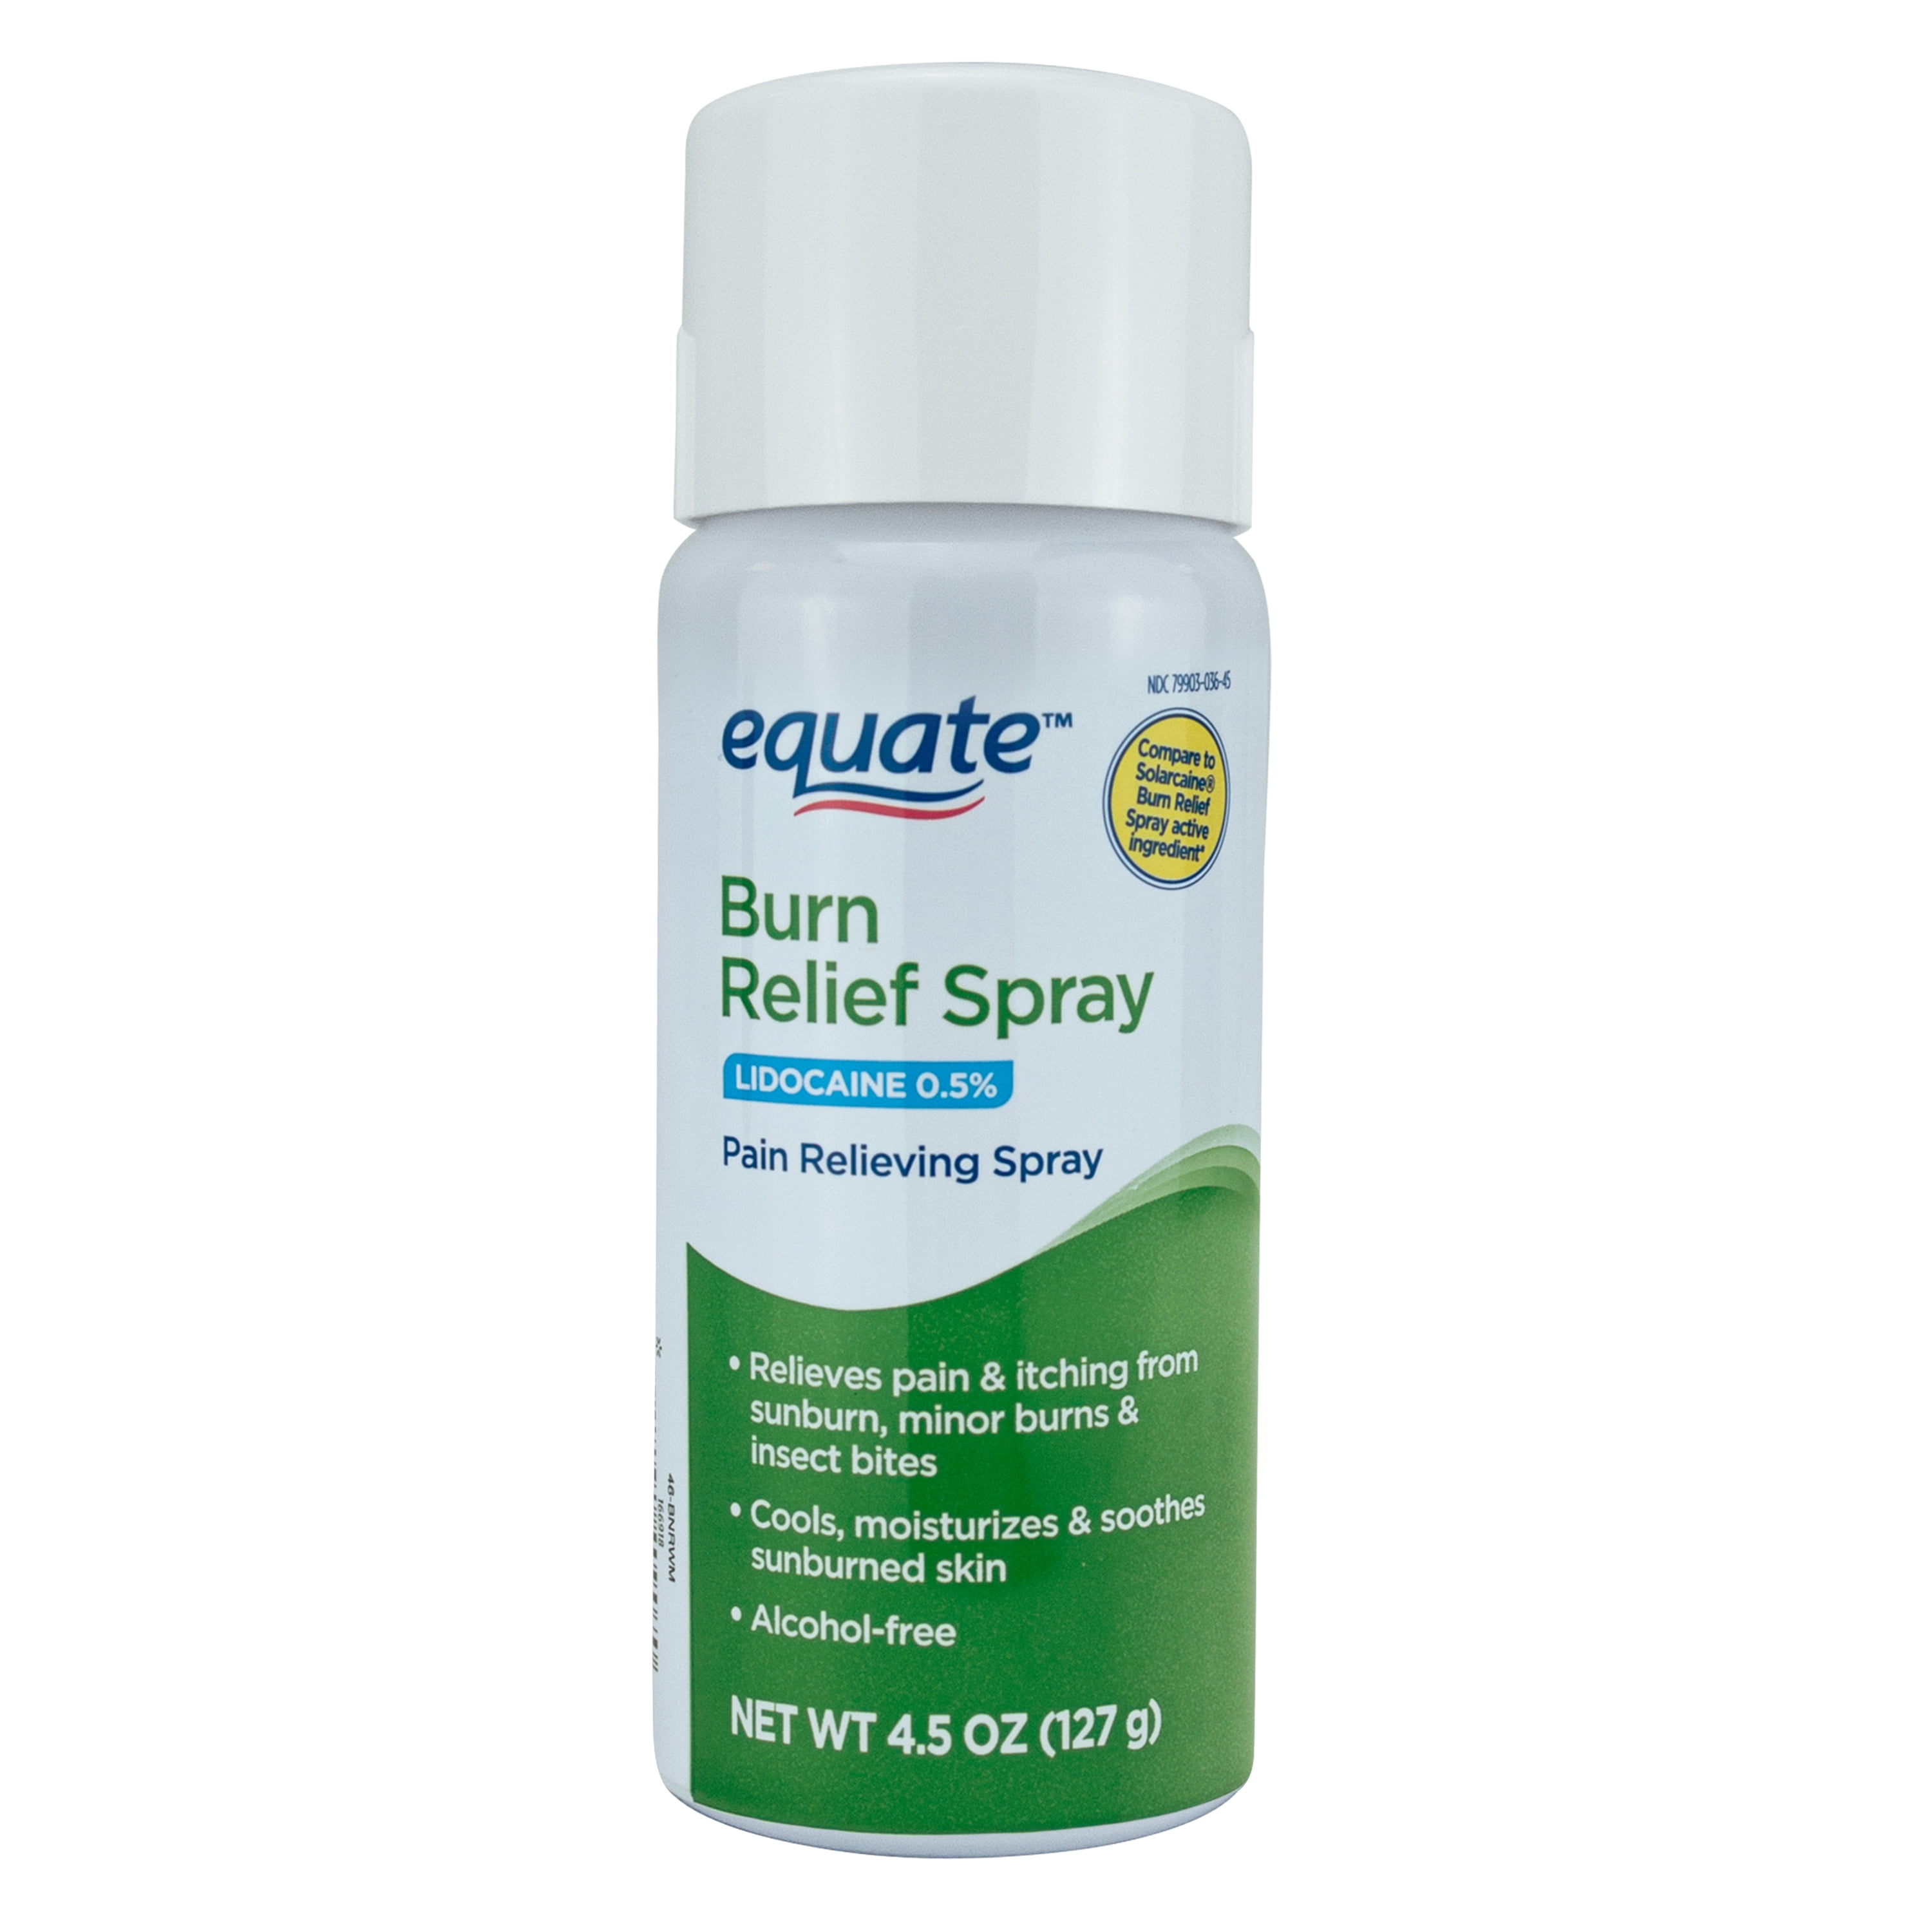 Equate Burn Relief Spray, 4.5 oz